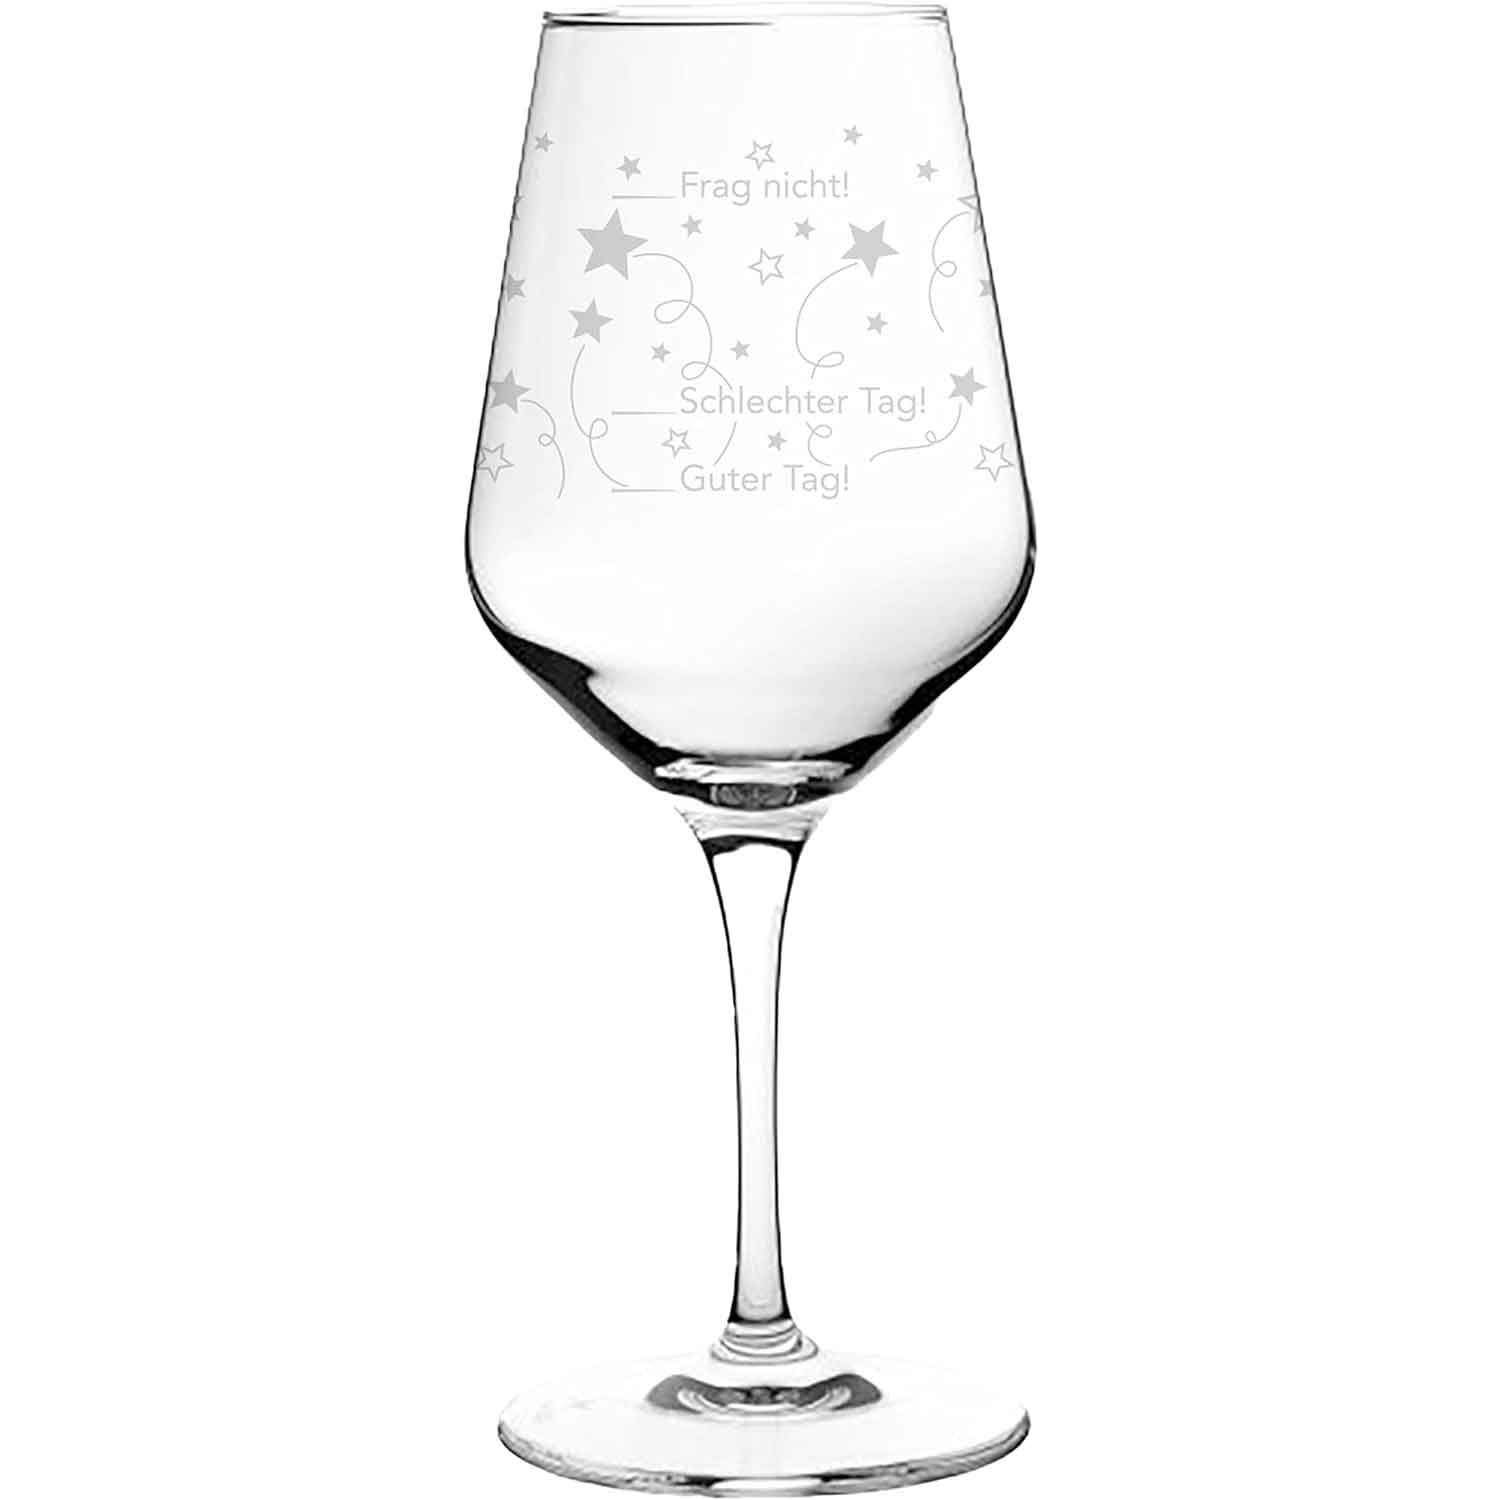 Kristall-Weinglas-550ml-Guter-Tag/Schlechter-Tag-inklusive-Geschenkbox-berlindeluxe-trauben-weinglas-weißes-weinglas